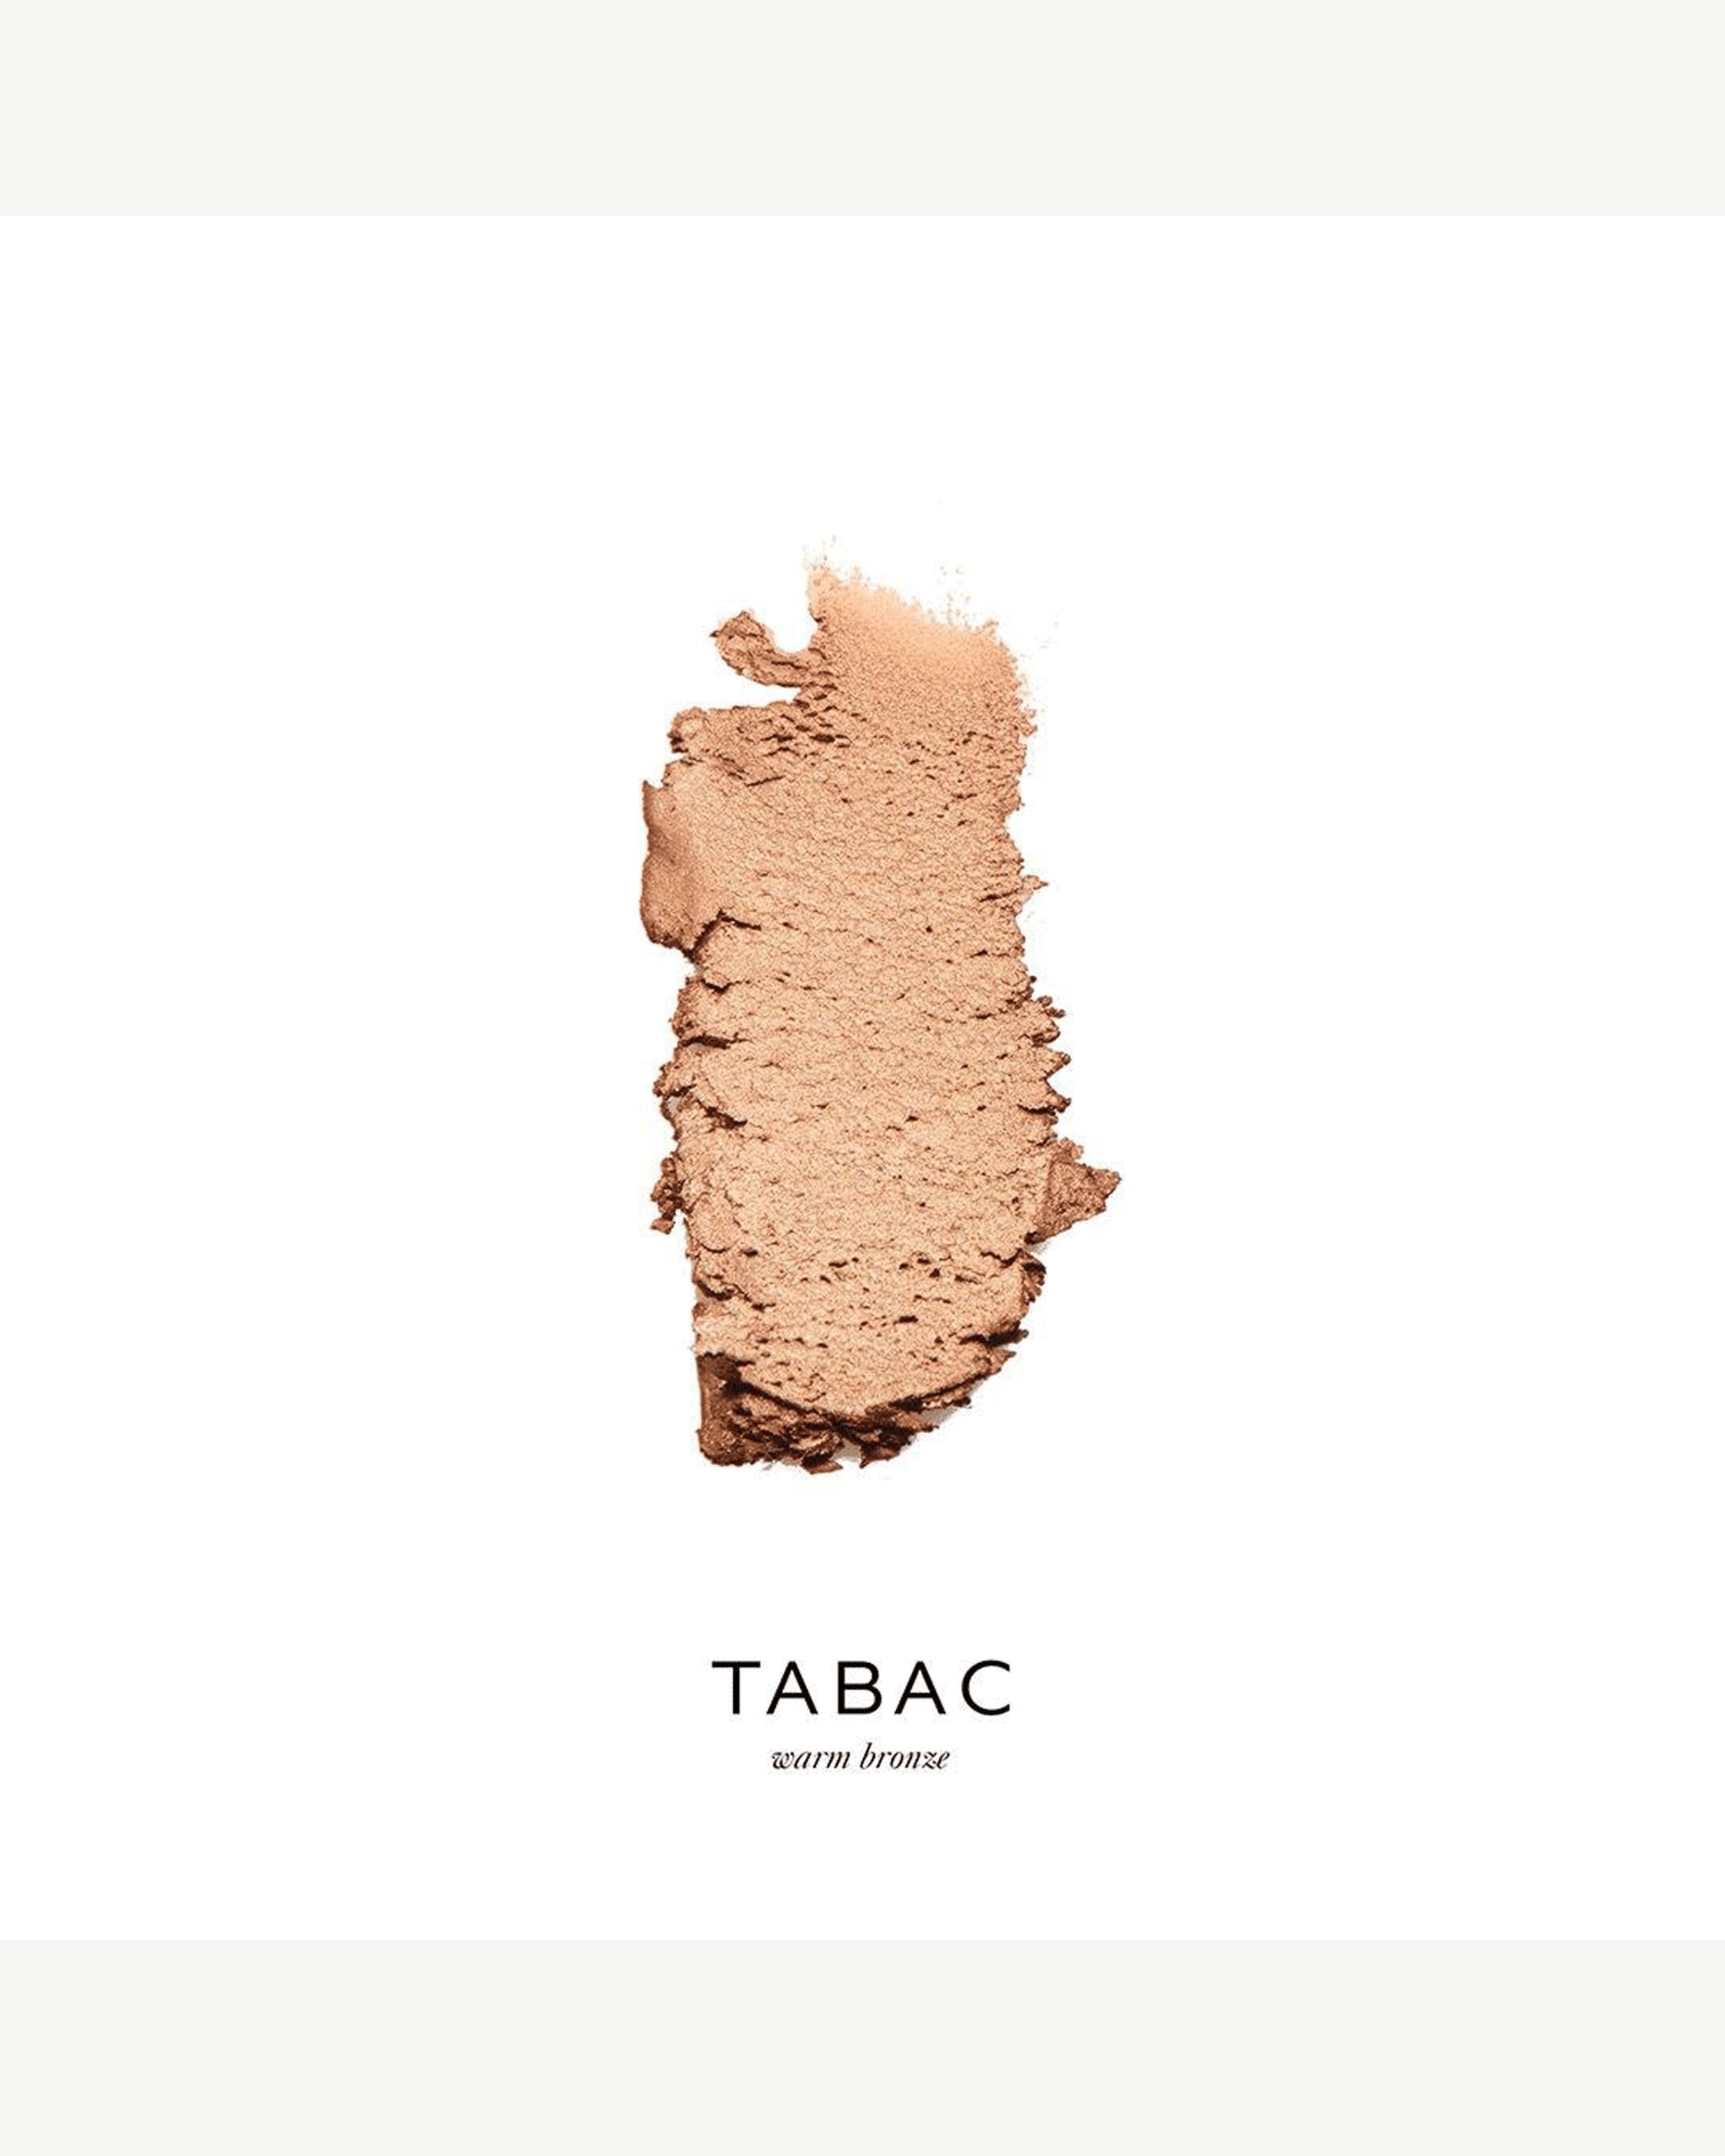 Tabac (warm bronze)